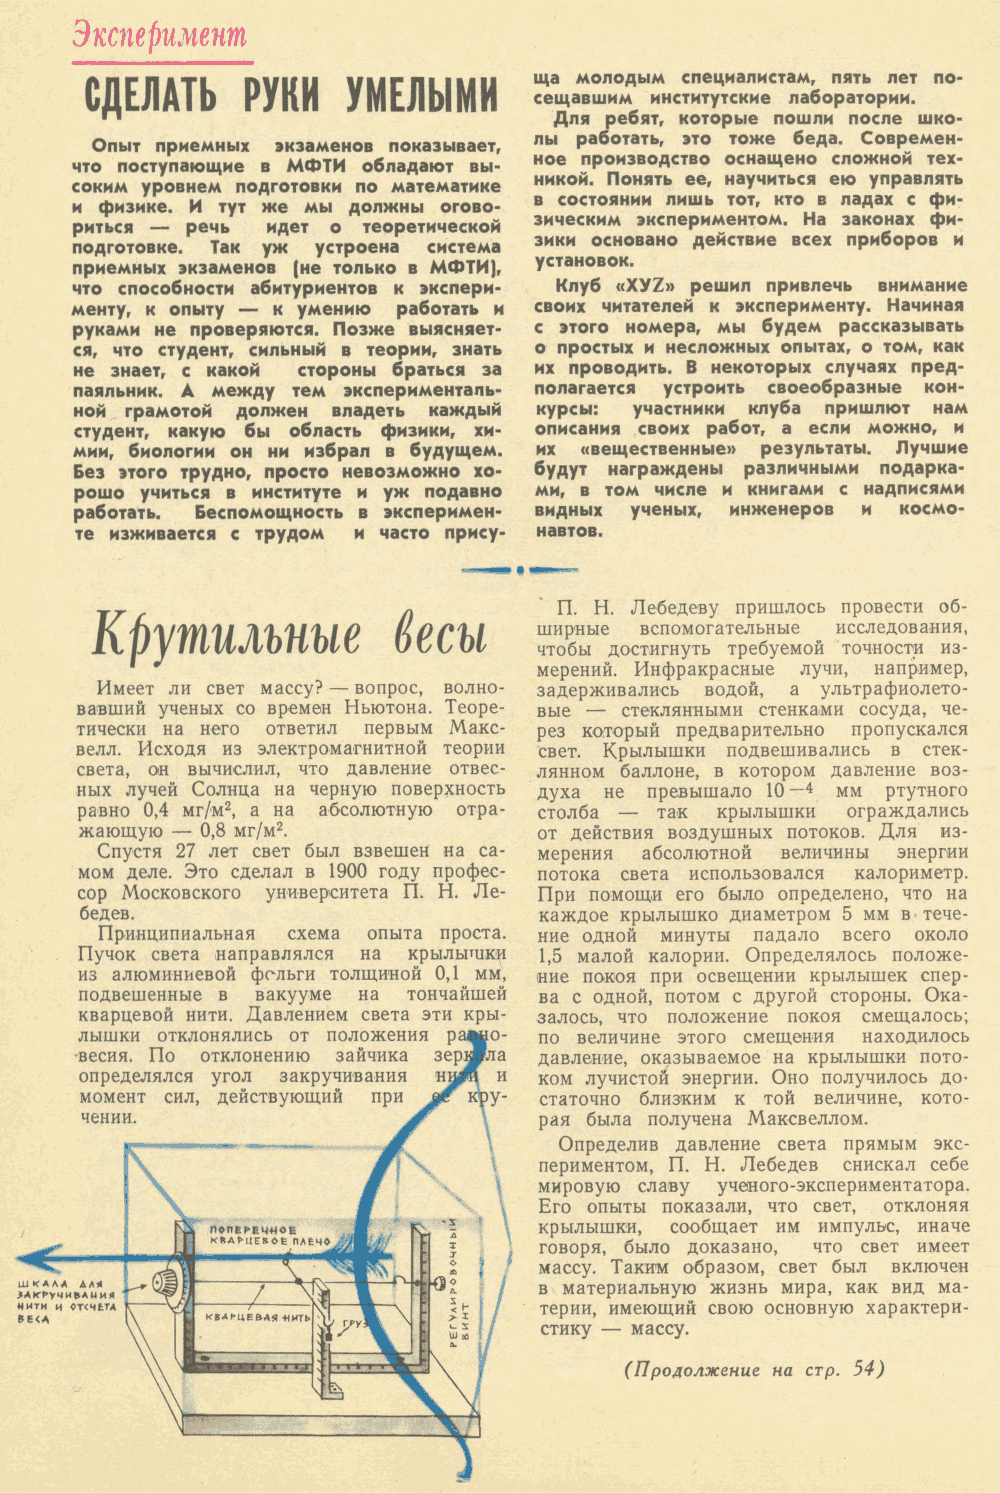 Крутильные весы. Ф. Игошин. Юный техник, 1971, №2, с.44,54. Фотокопия №1